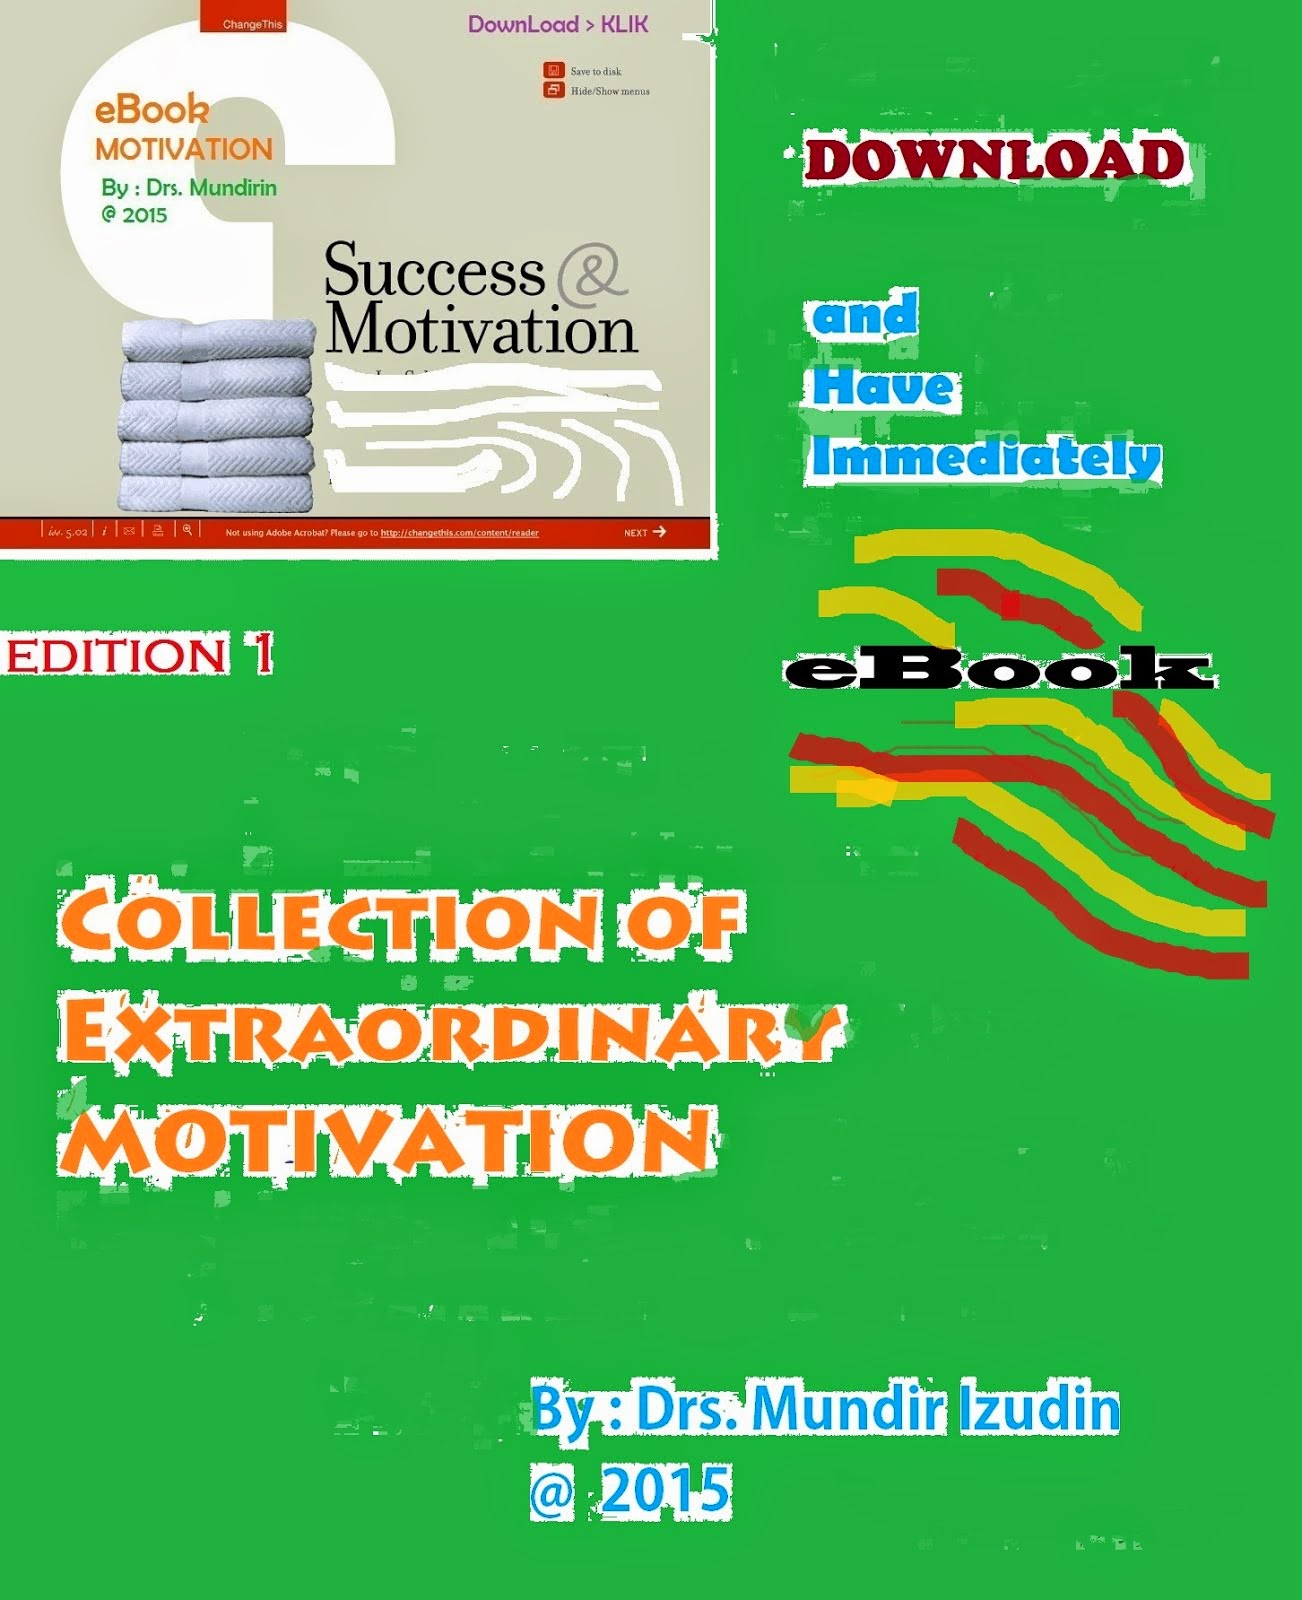 eBook Complete MOTIVATION & HERB MEDICINE